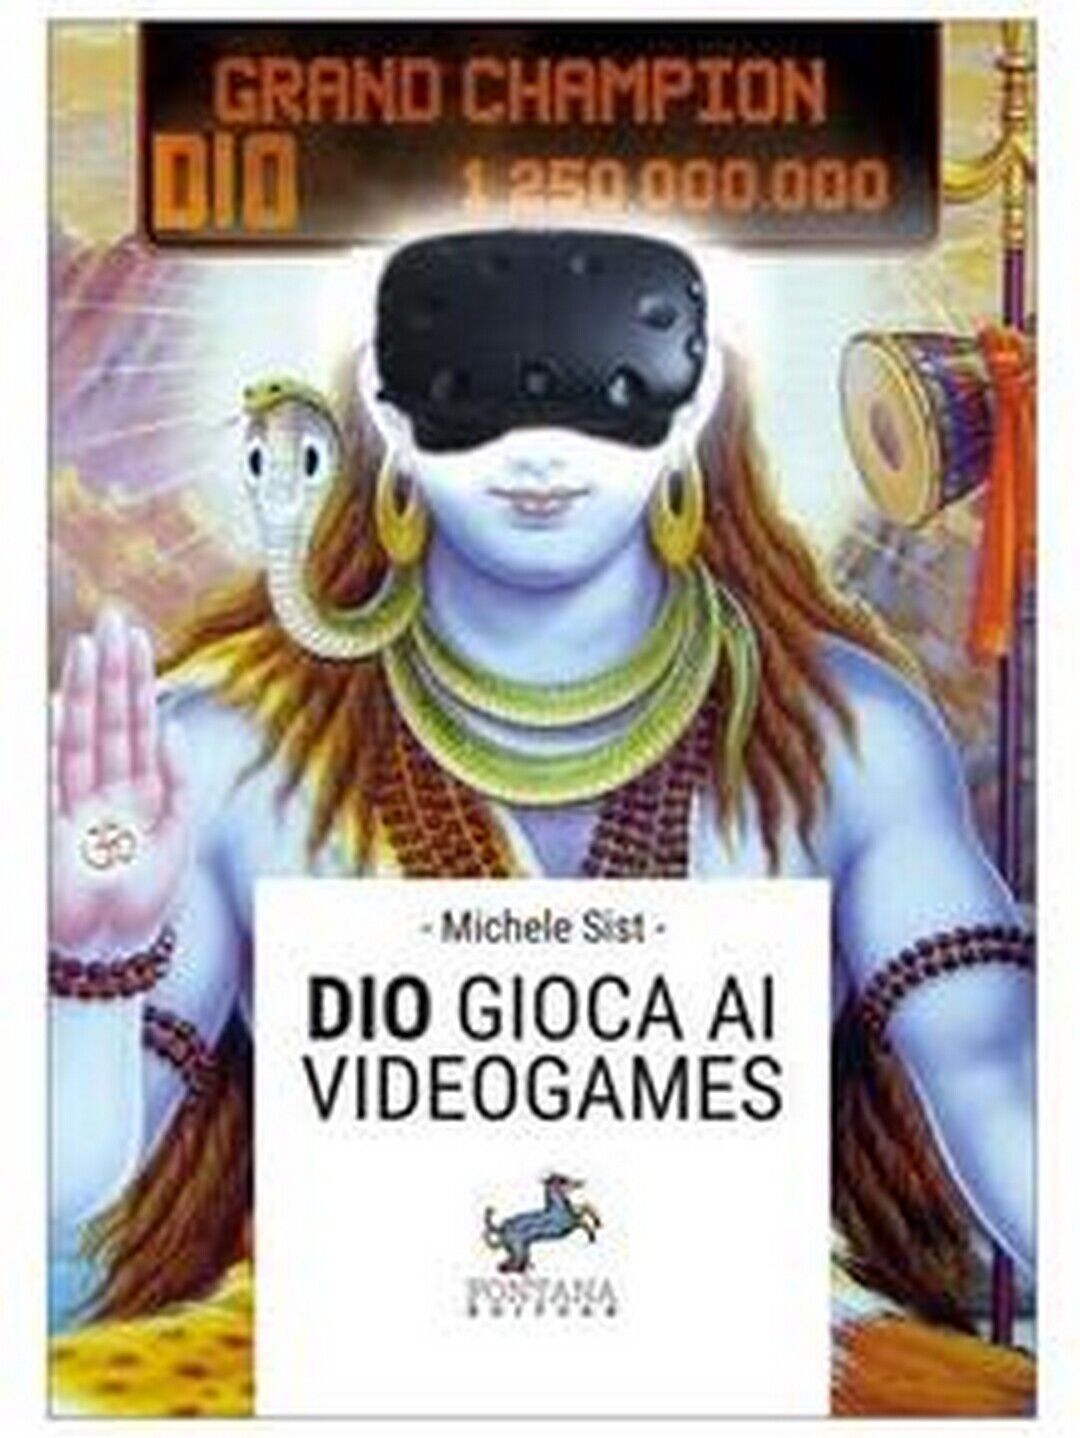 Dio gioca ai videogames  di Michele Sist,  2020,  Fontana Editore